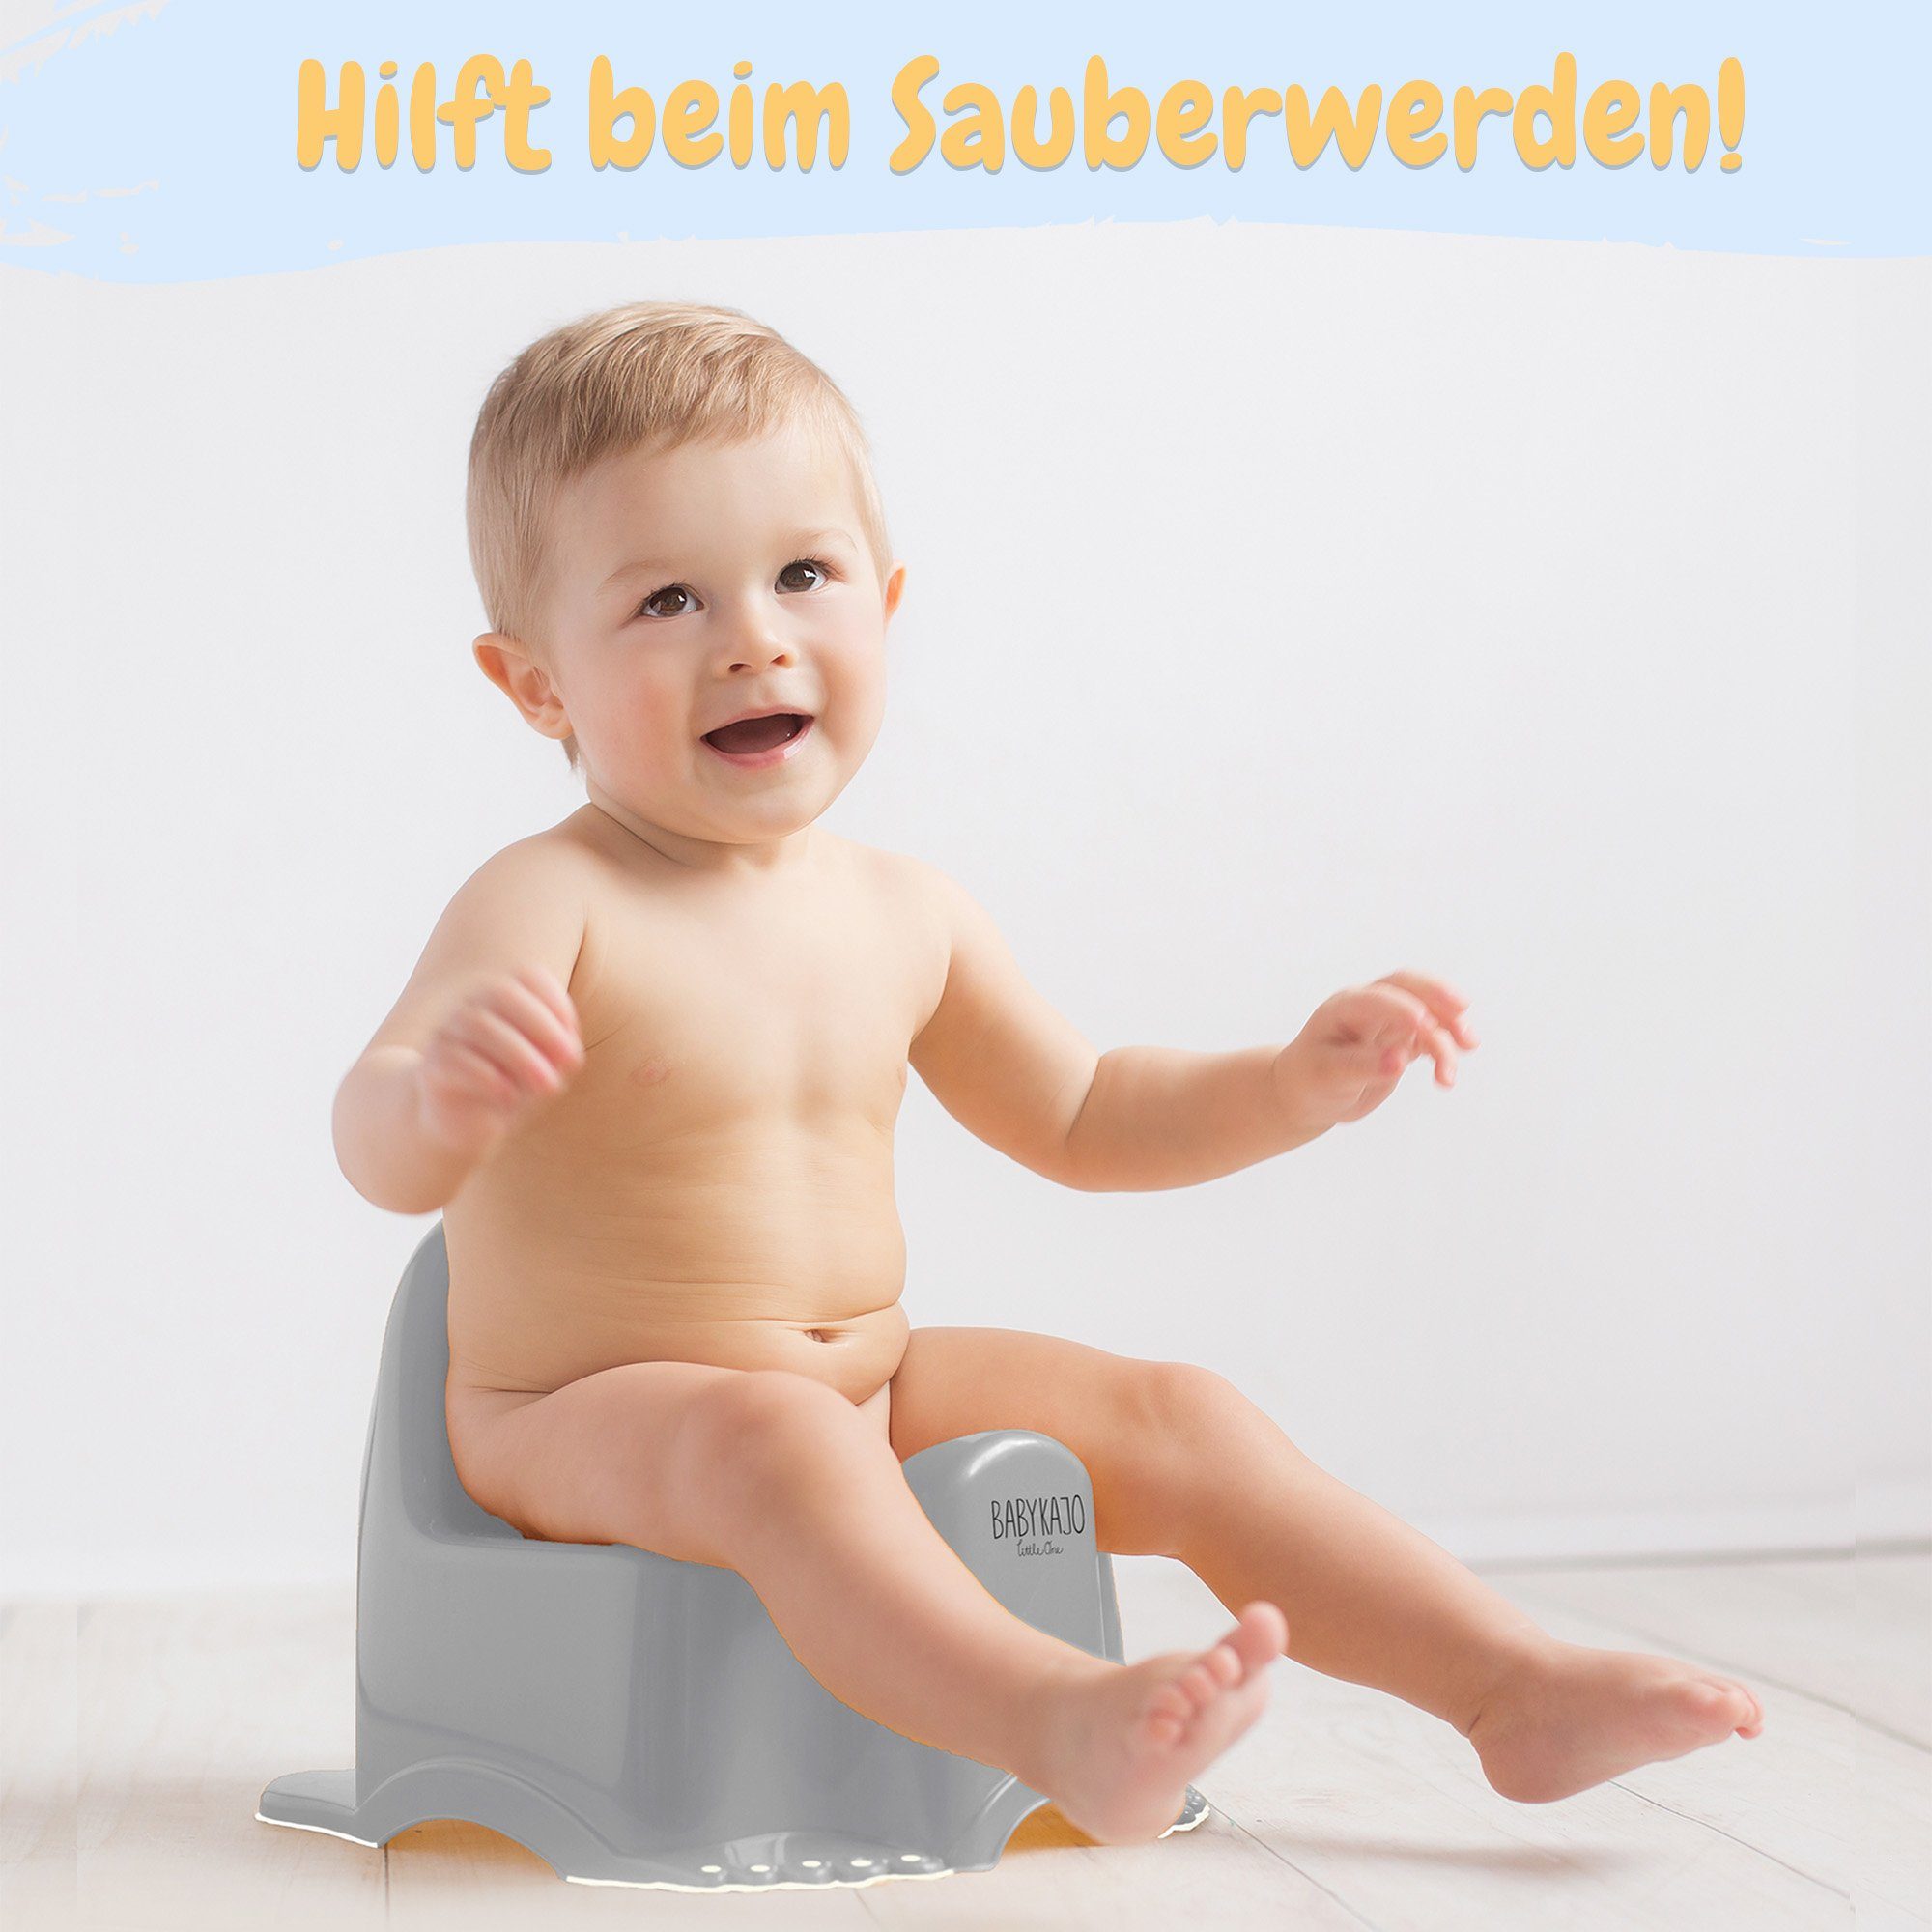 Babykajo Töpfchen, (1-tlg), Kinder Rheinland geprüft! grau TÜV Eule Toilette